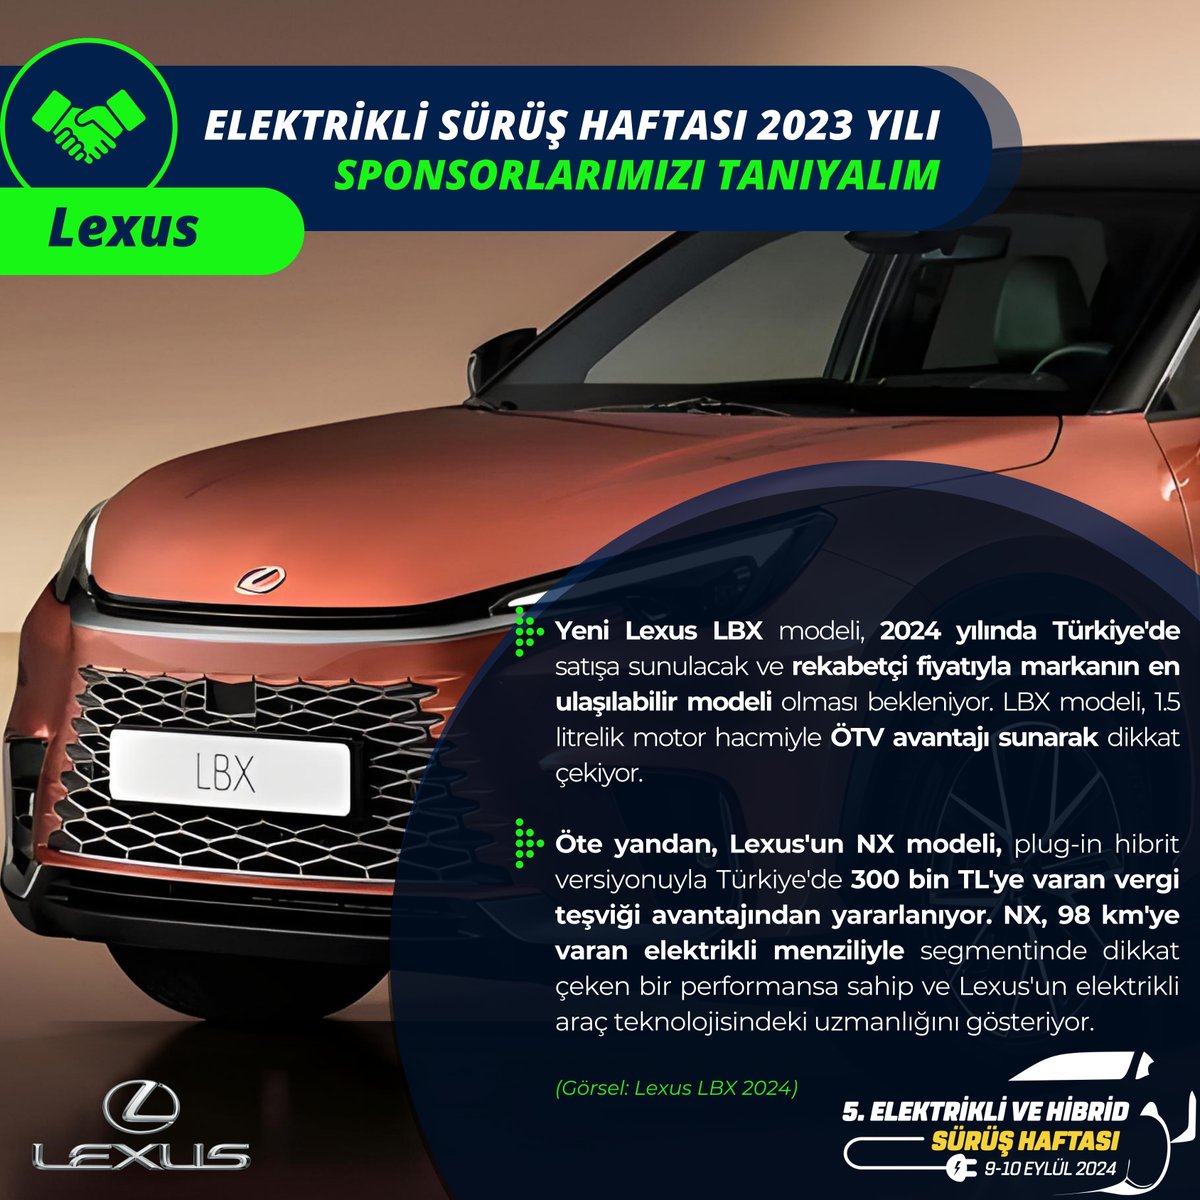 Yeni Lexus LBX modeli, 2024 yılında Türkiye'de satışa sunulacak ve rekabetçi fiyatıyla markanın en ulaşılabilir modeli olması bekleniyor. - aa.com.tr @ehcars #elektriklisürüşhaftası #elektrikliaraba #electriccars #LexusLBX @Lexus